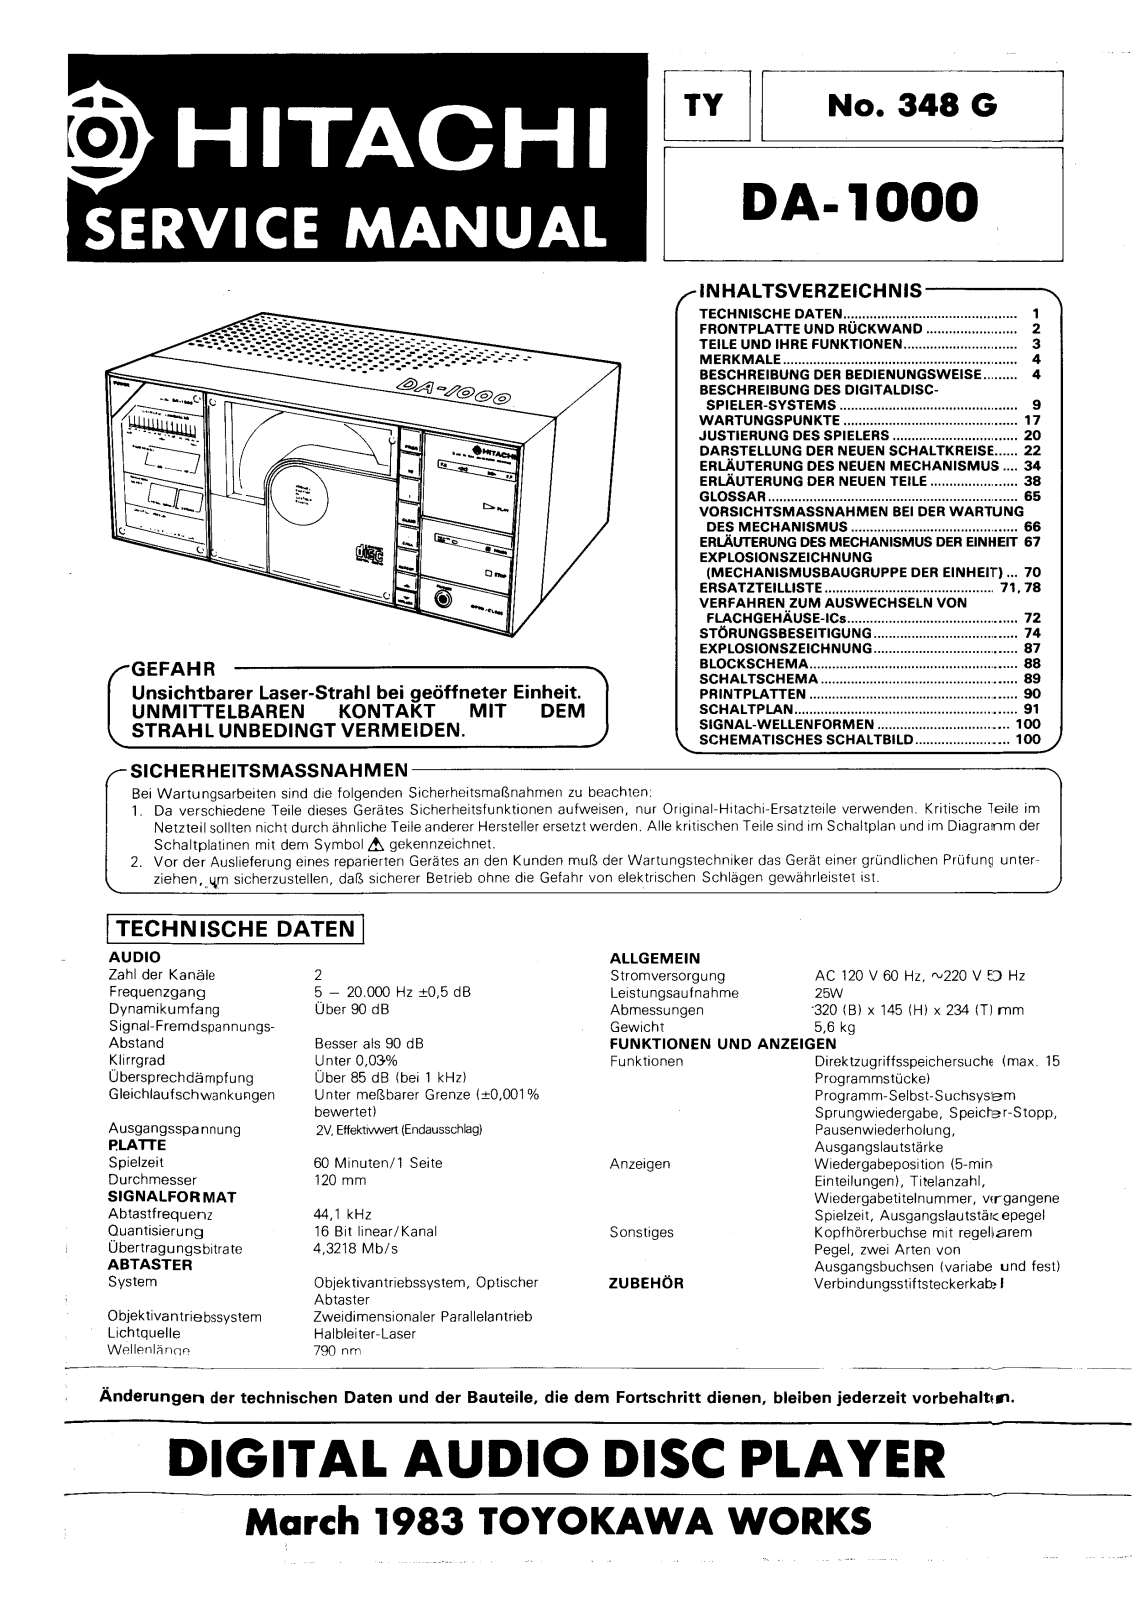 Hitachi DA-1000 Service manual